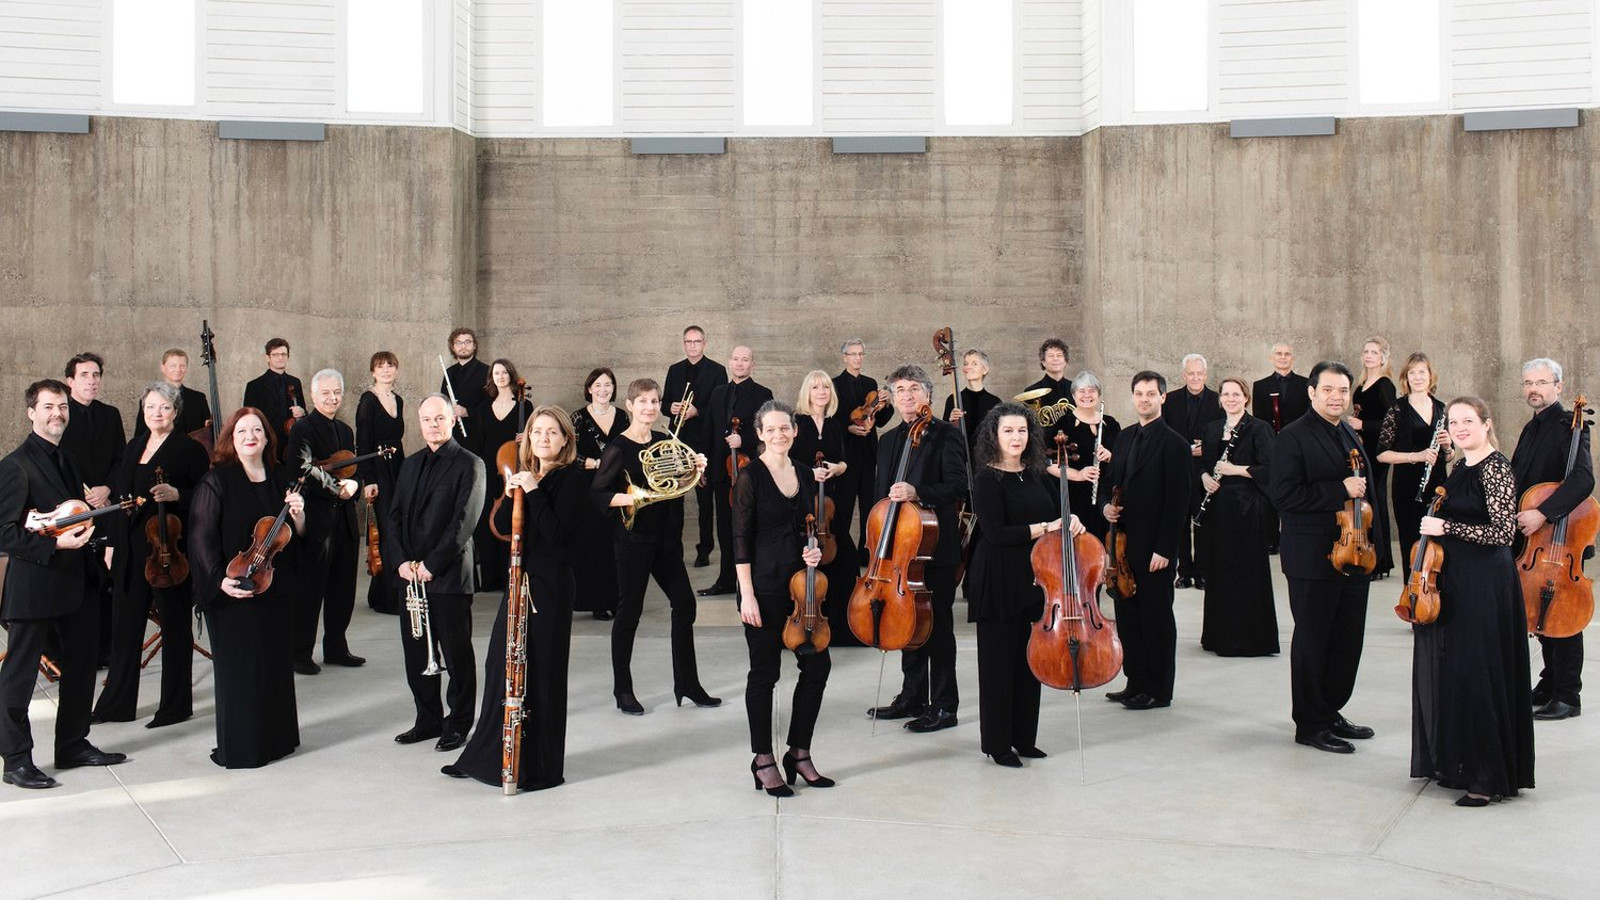 Kuvassa on orkesterin St. Martin in the Fields jäsenet seisomassa soittimet kädessään ja seisovat.  Taustalla on harmaa seinä. 